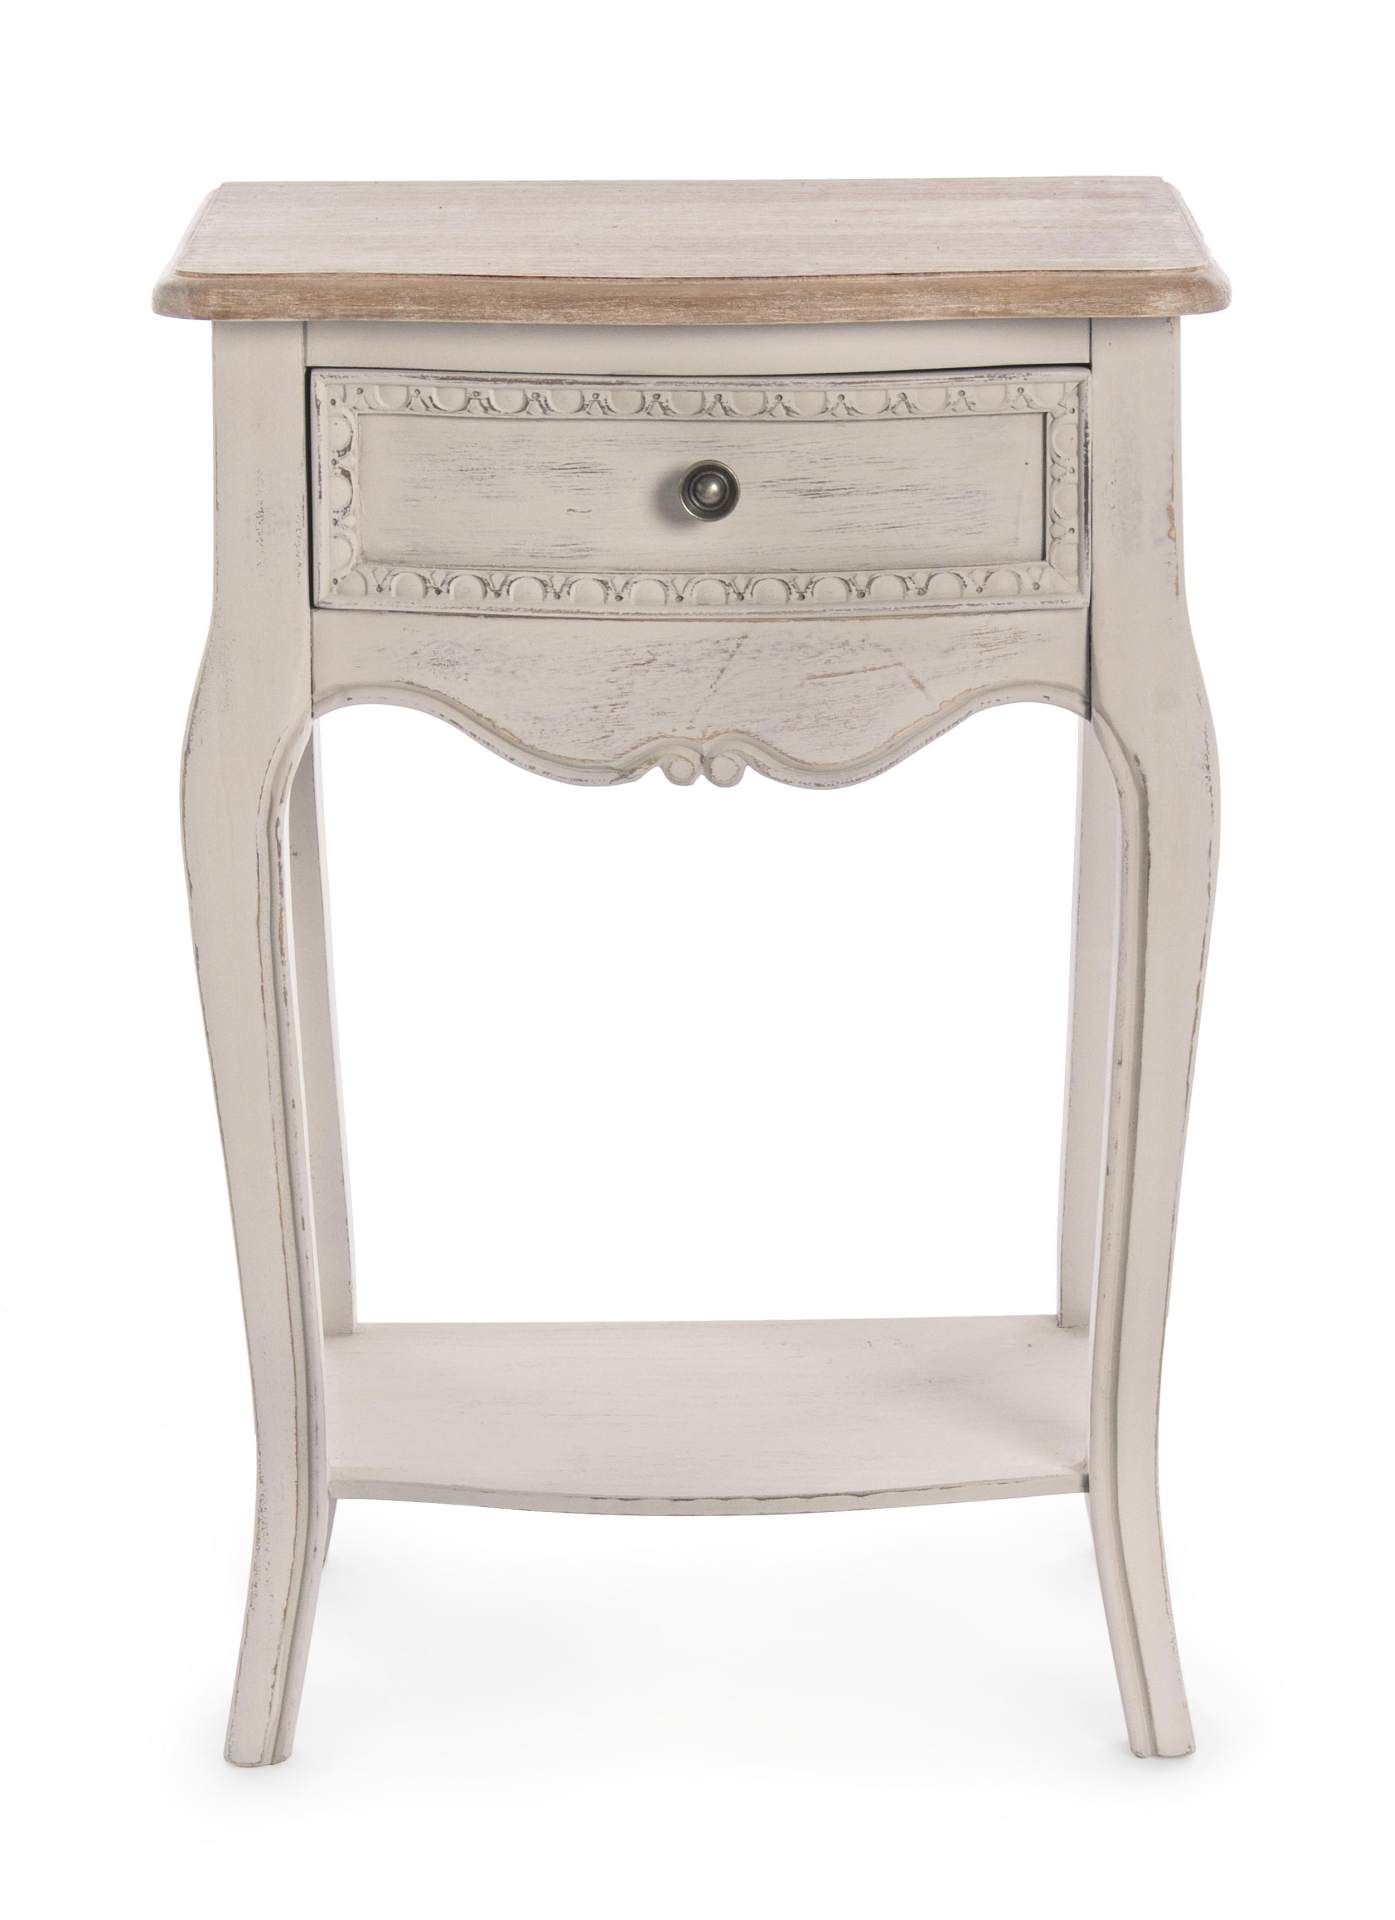 Der Nachttisch Clarissa überzeugt mit seinem klassischen Design. Gefertigt wurde er aus Paulowniaholz, welches einen grauen Farbton besitzt. Das Gestell ist auch aus Paulowniaholz. Der Nachttisch verfügt über eine Schublade. Die Breite beträgt 48 cm.